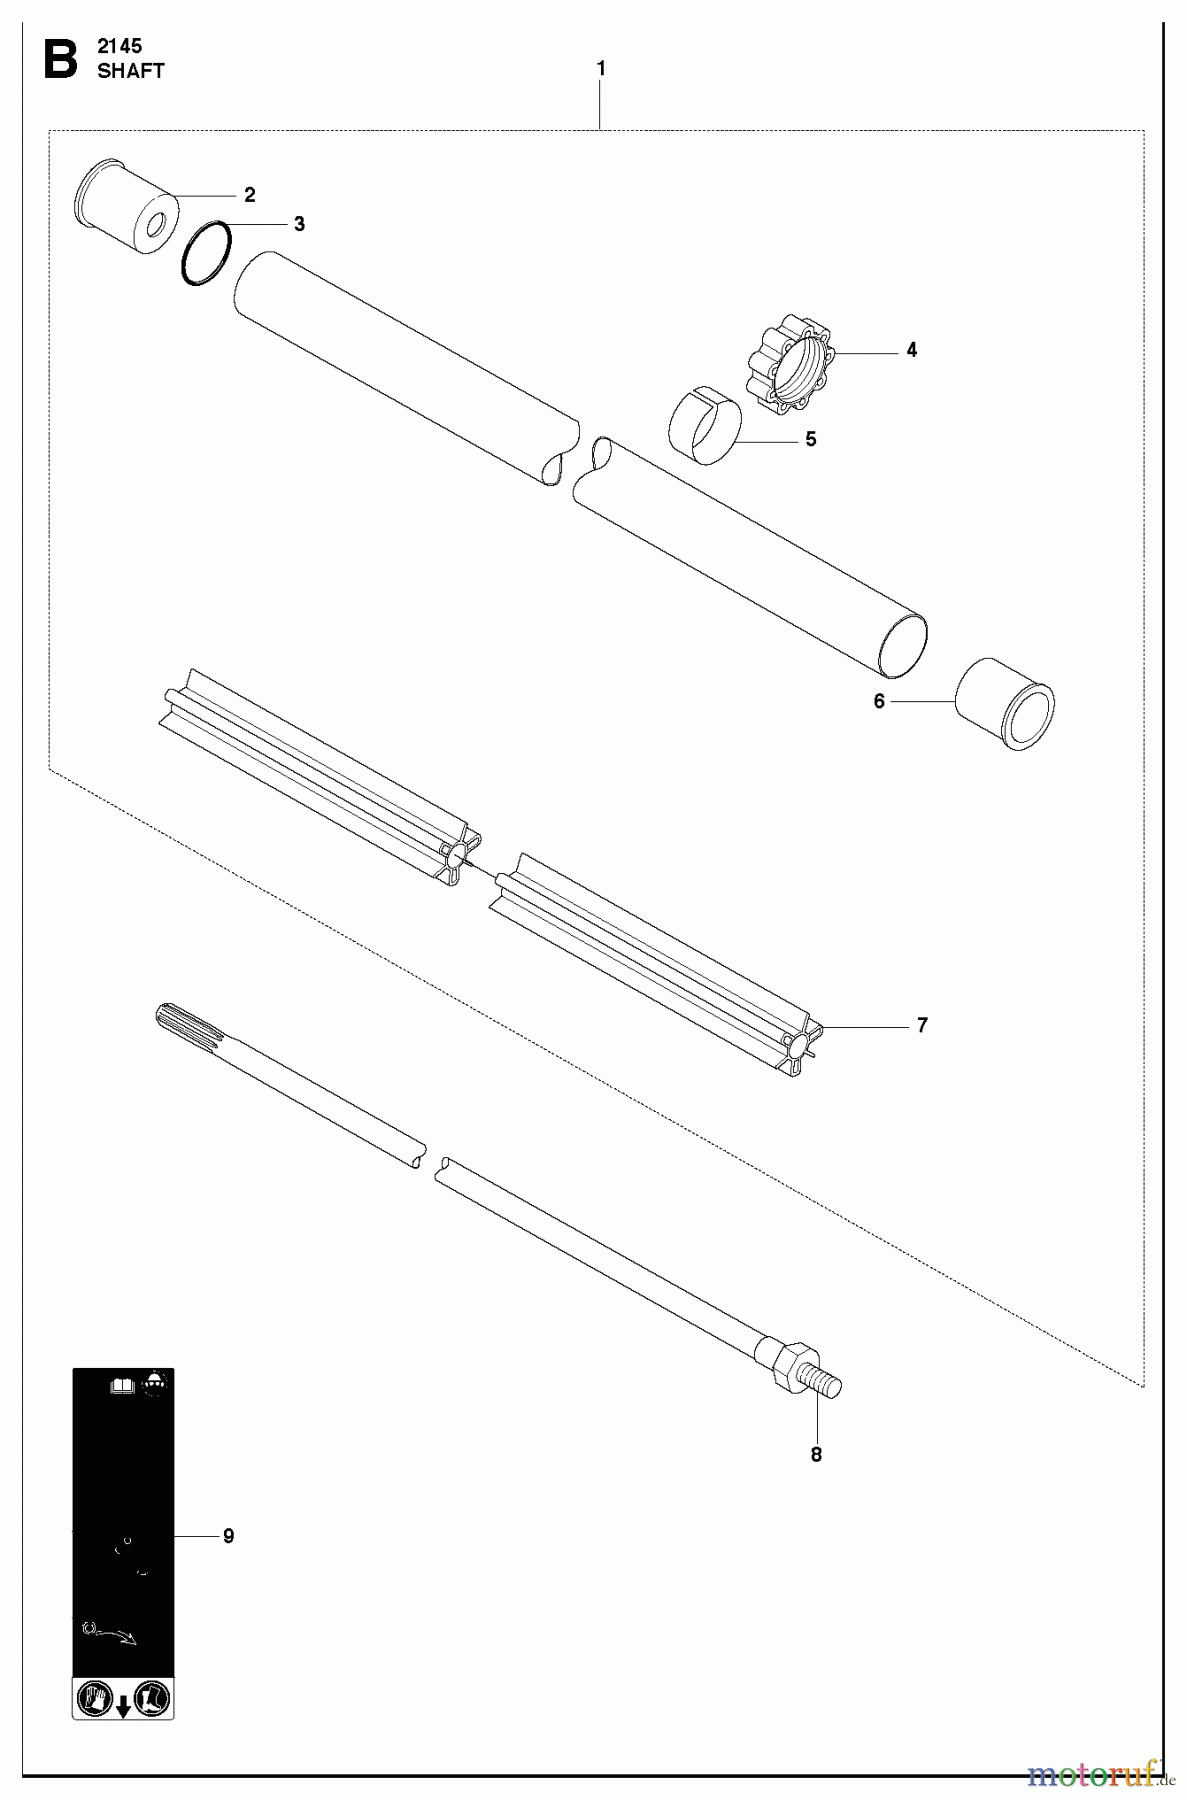  Jonsered Motorsensen, Trimmer CC2145 - Jonsered String/Brush Trimmer (2010-09) SHAFT